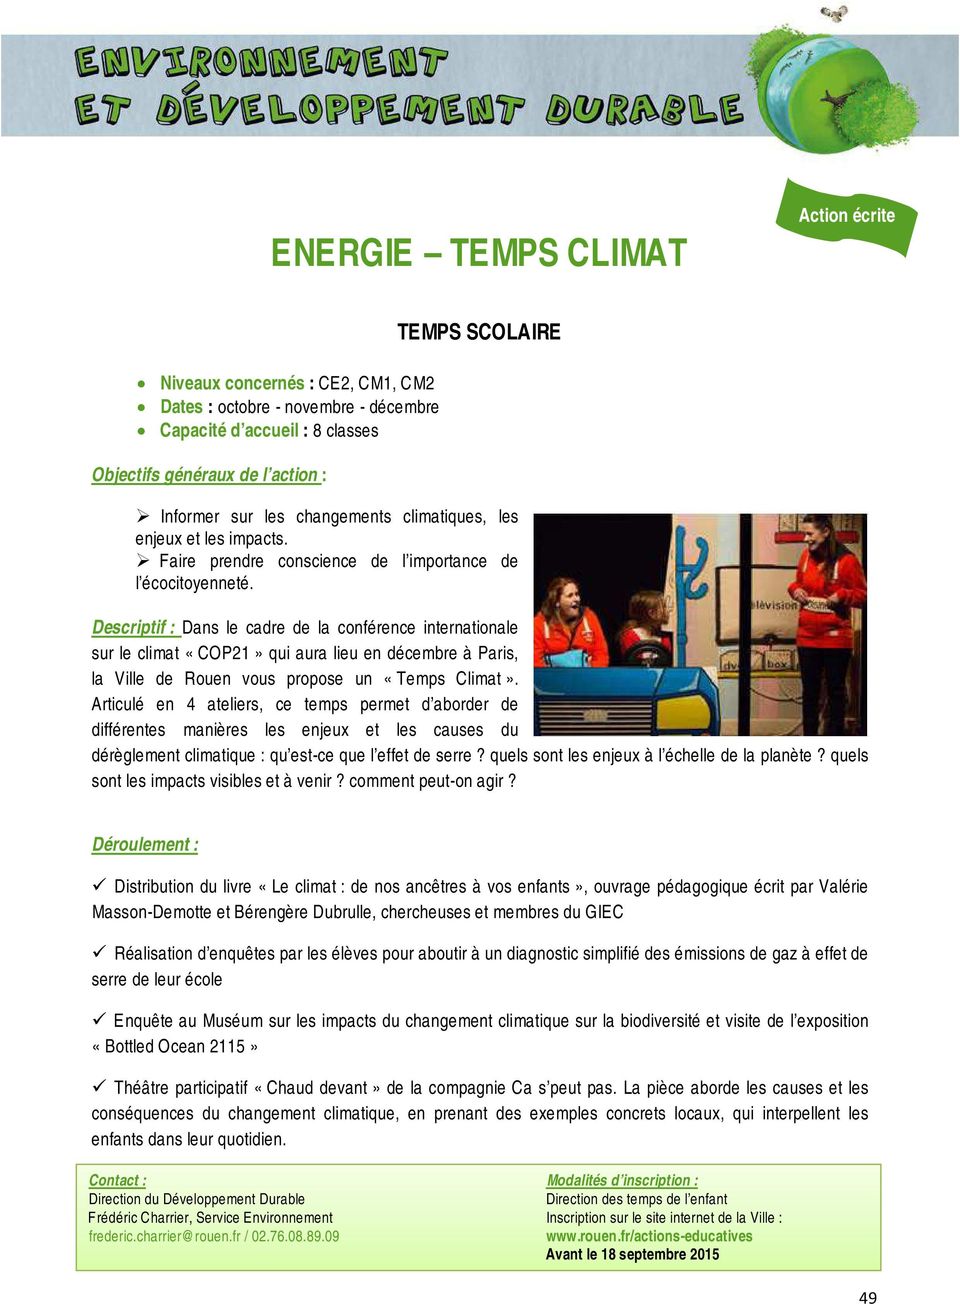 Descriptif : Dans le cadre de la conférence internationale sur le climat «COP21» qui aura lieu en décembre à Paris, la Ville de Rouen vous propose un «Temps Climat».